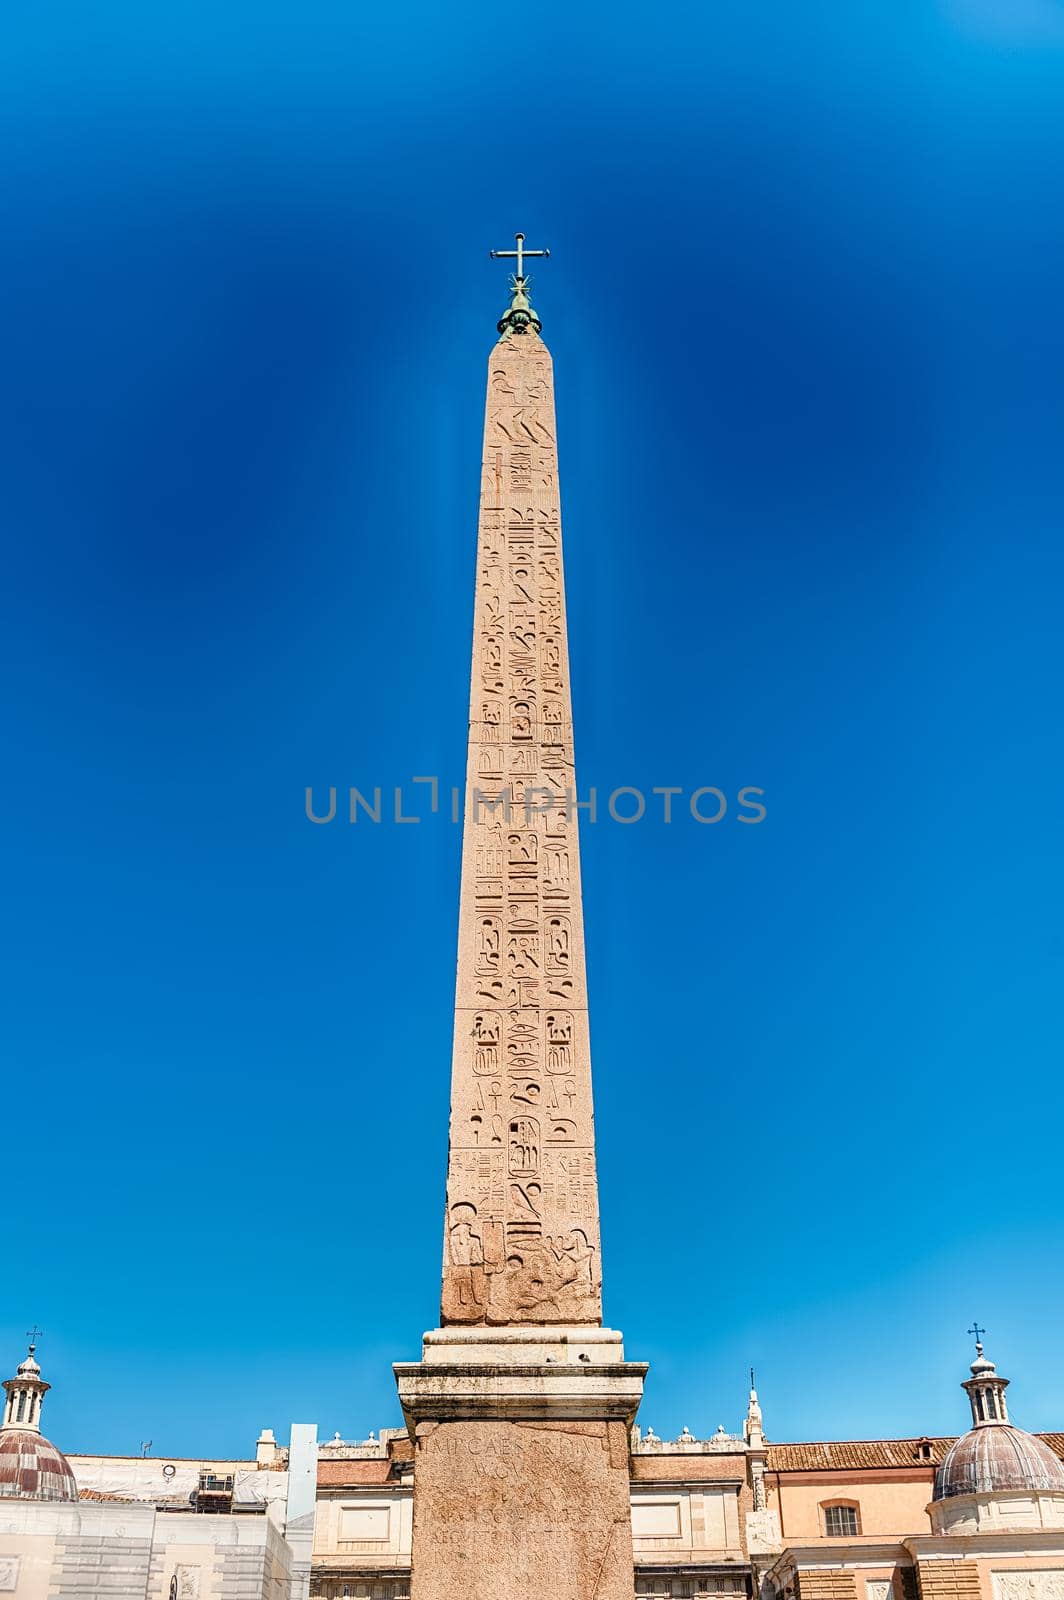 Egyptian obelisk in Piazza del Popolo, Rome, Italy by marcorubino